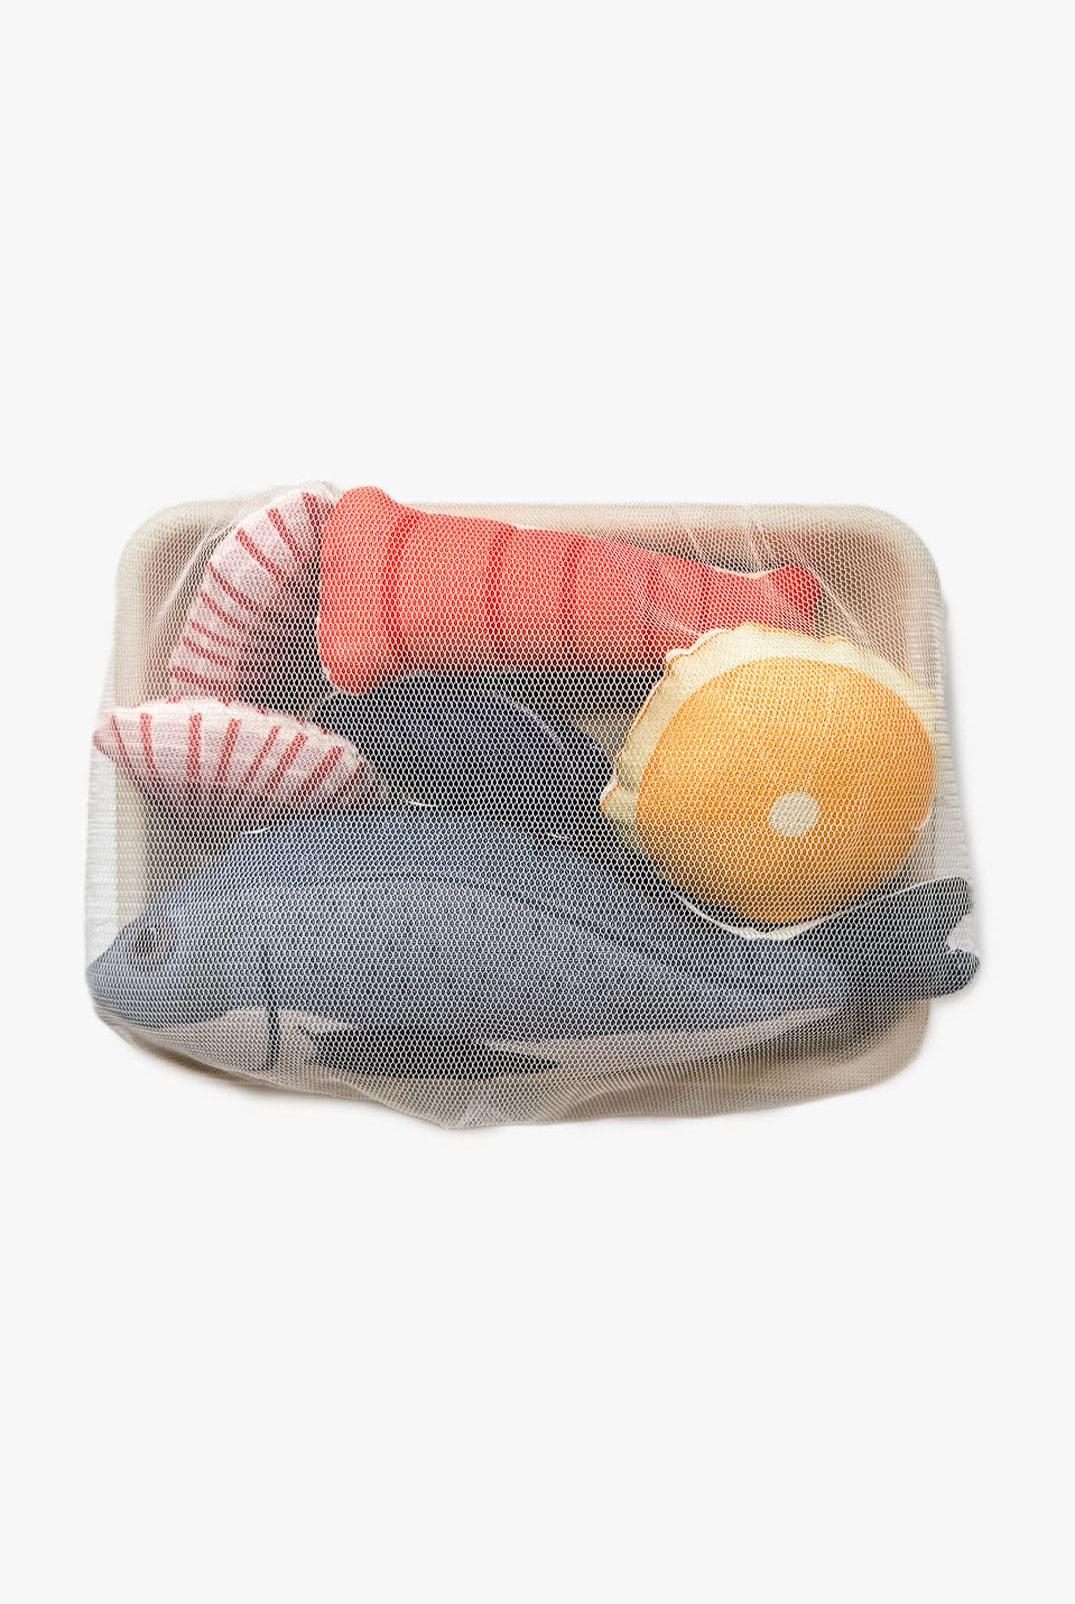 Food Toys Seafood Platter